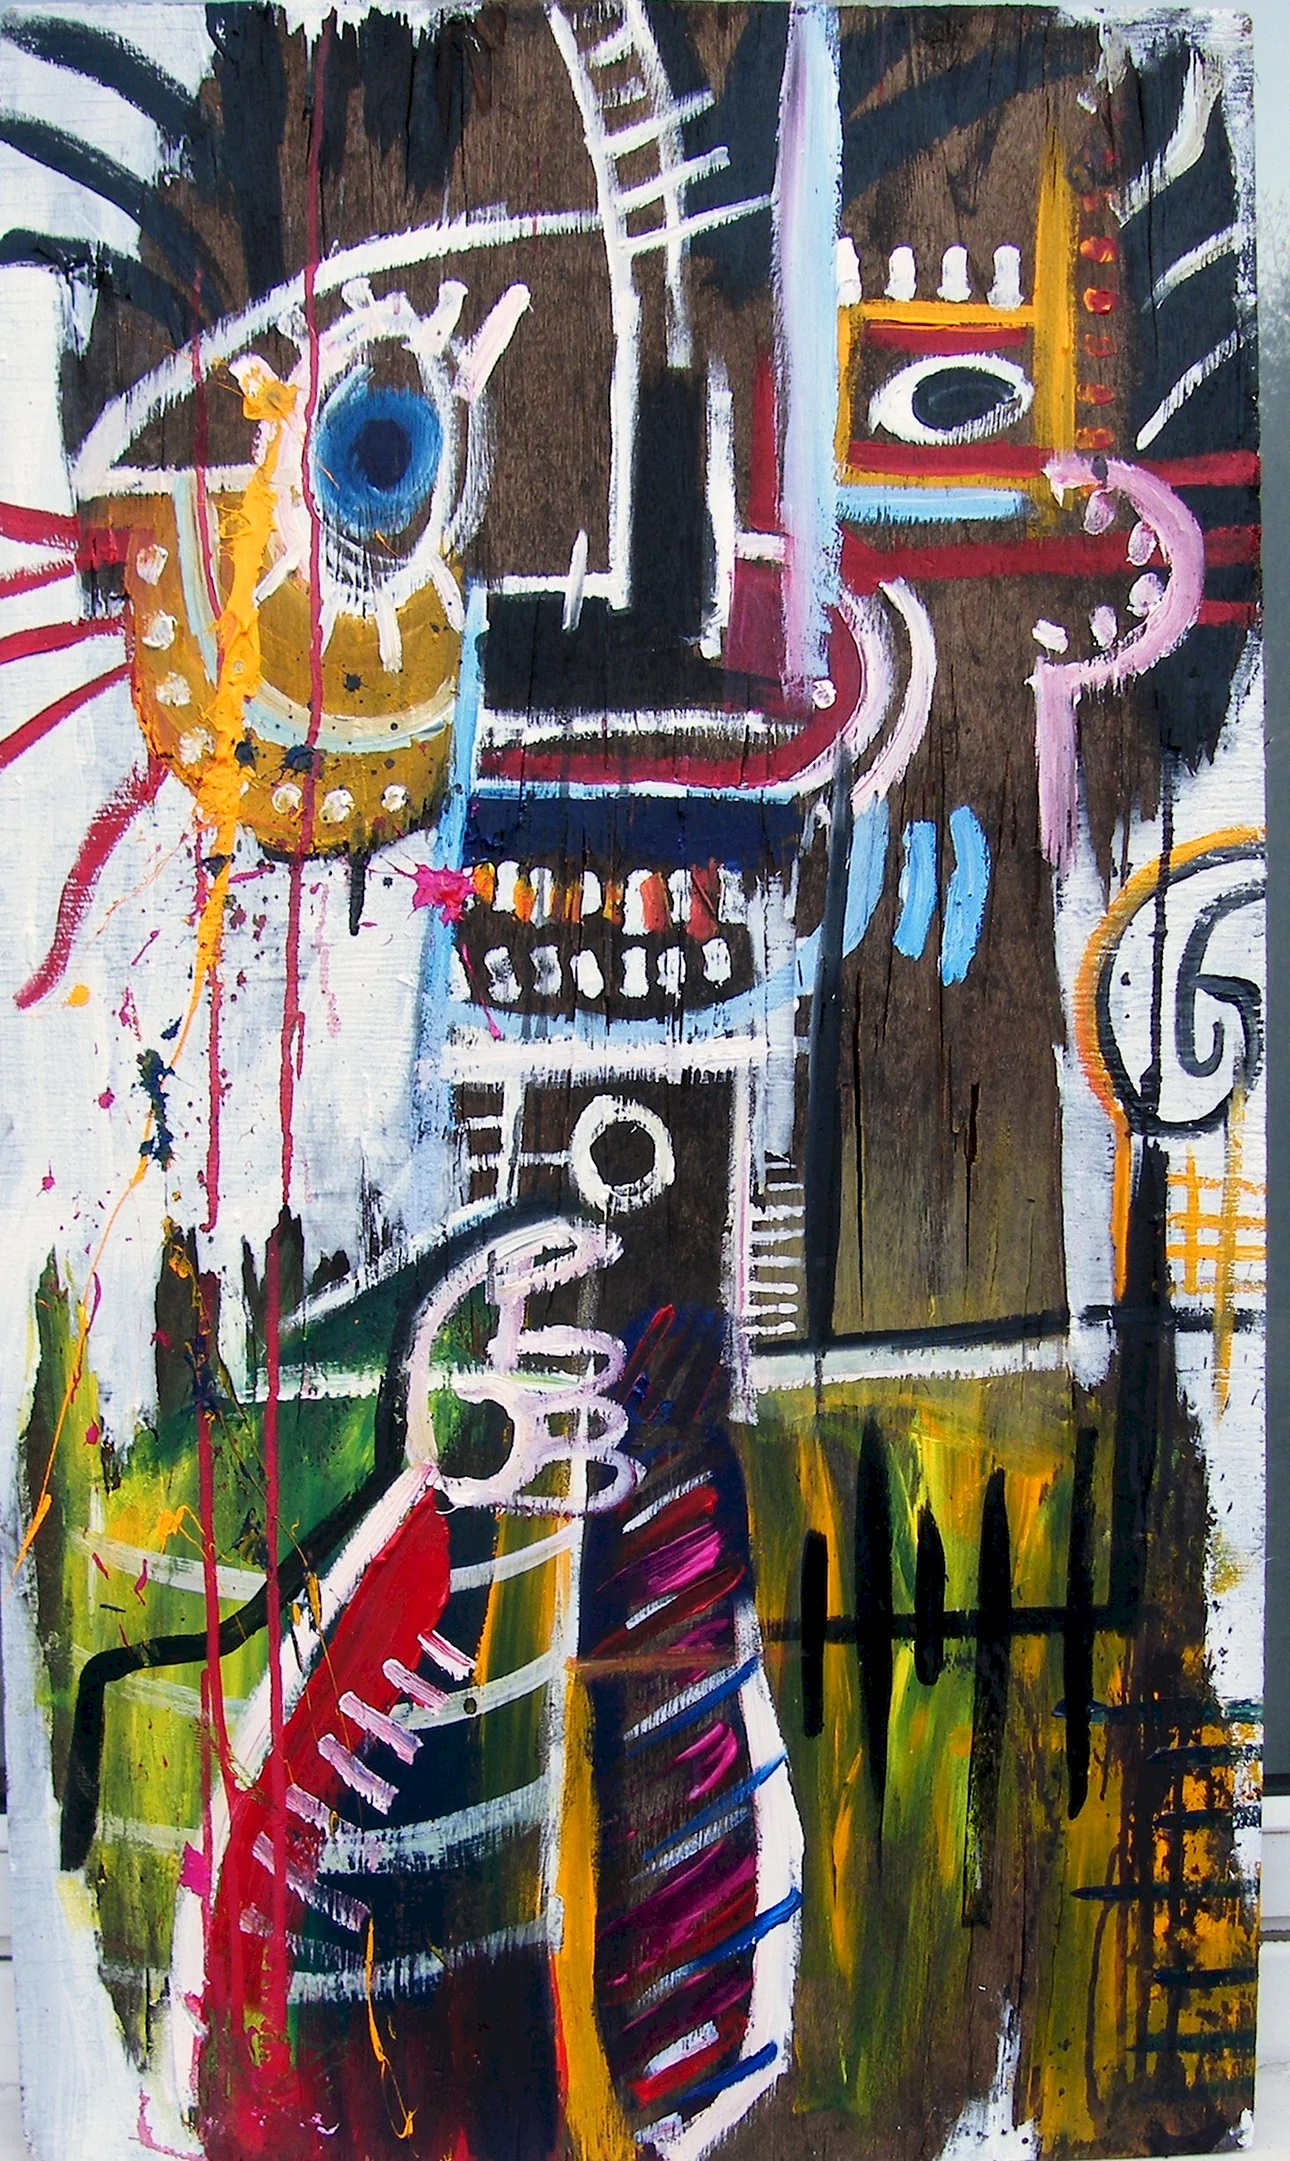 Jean-Michel Basquiat Wallpaper For iPhone